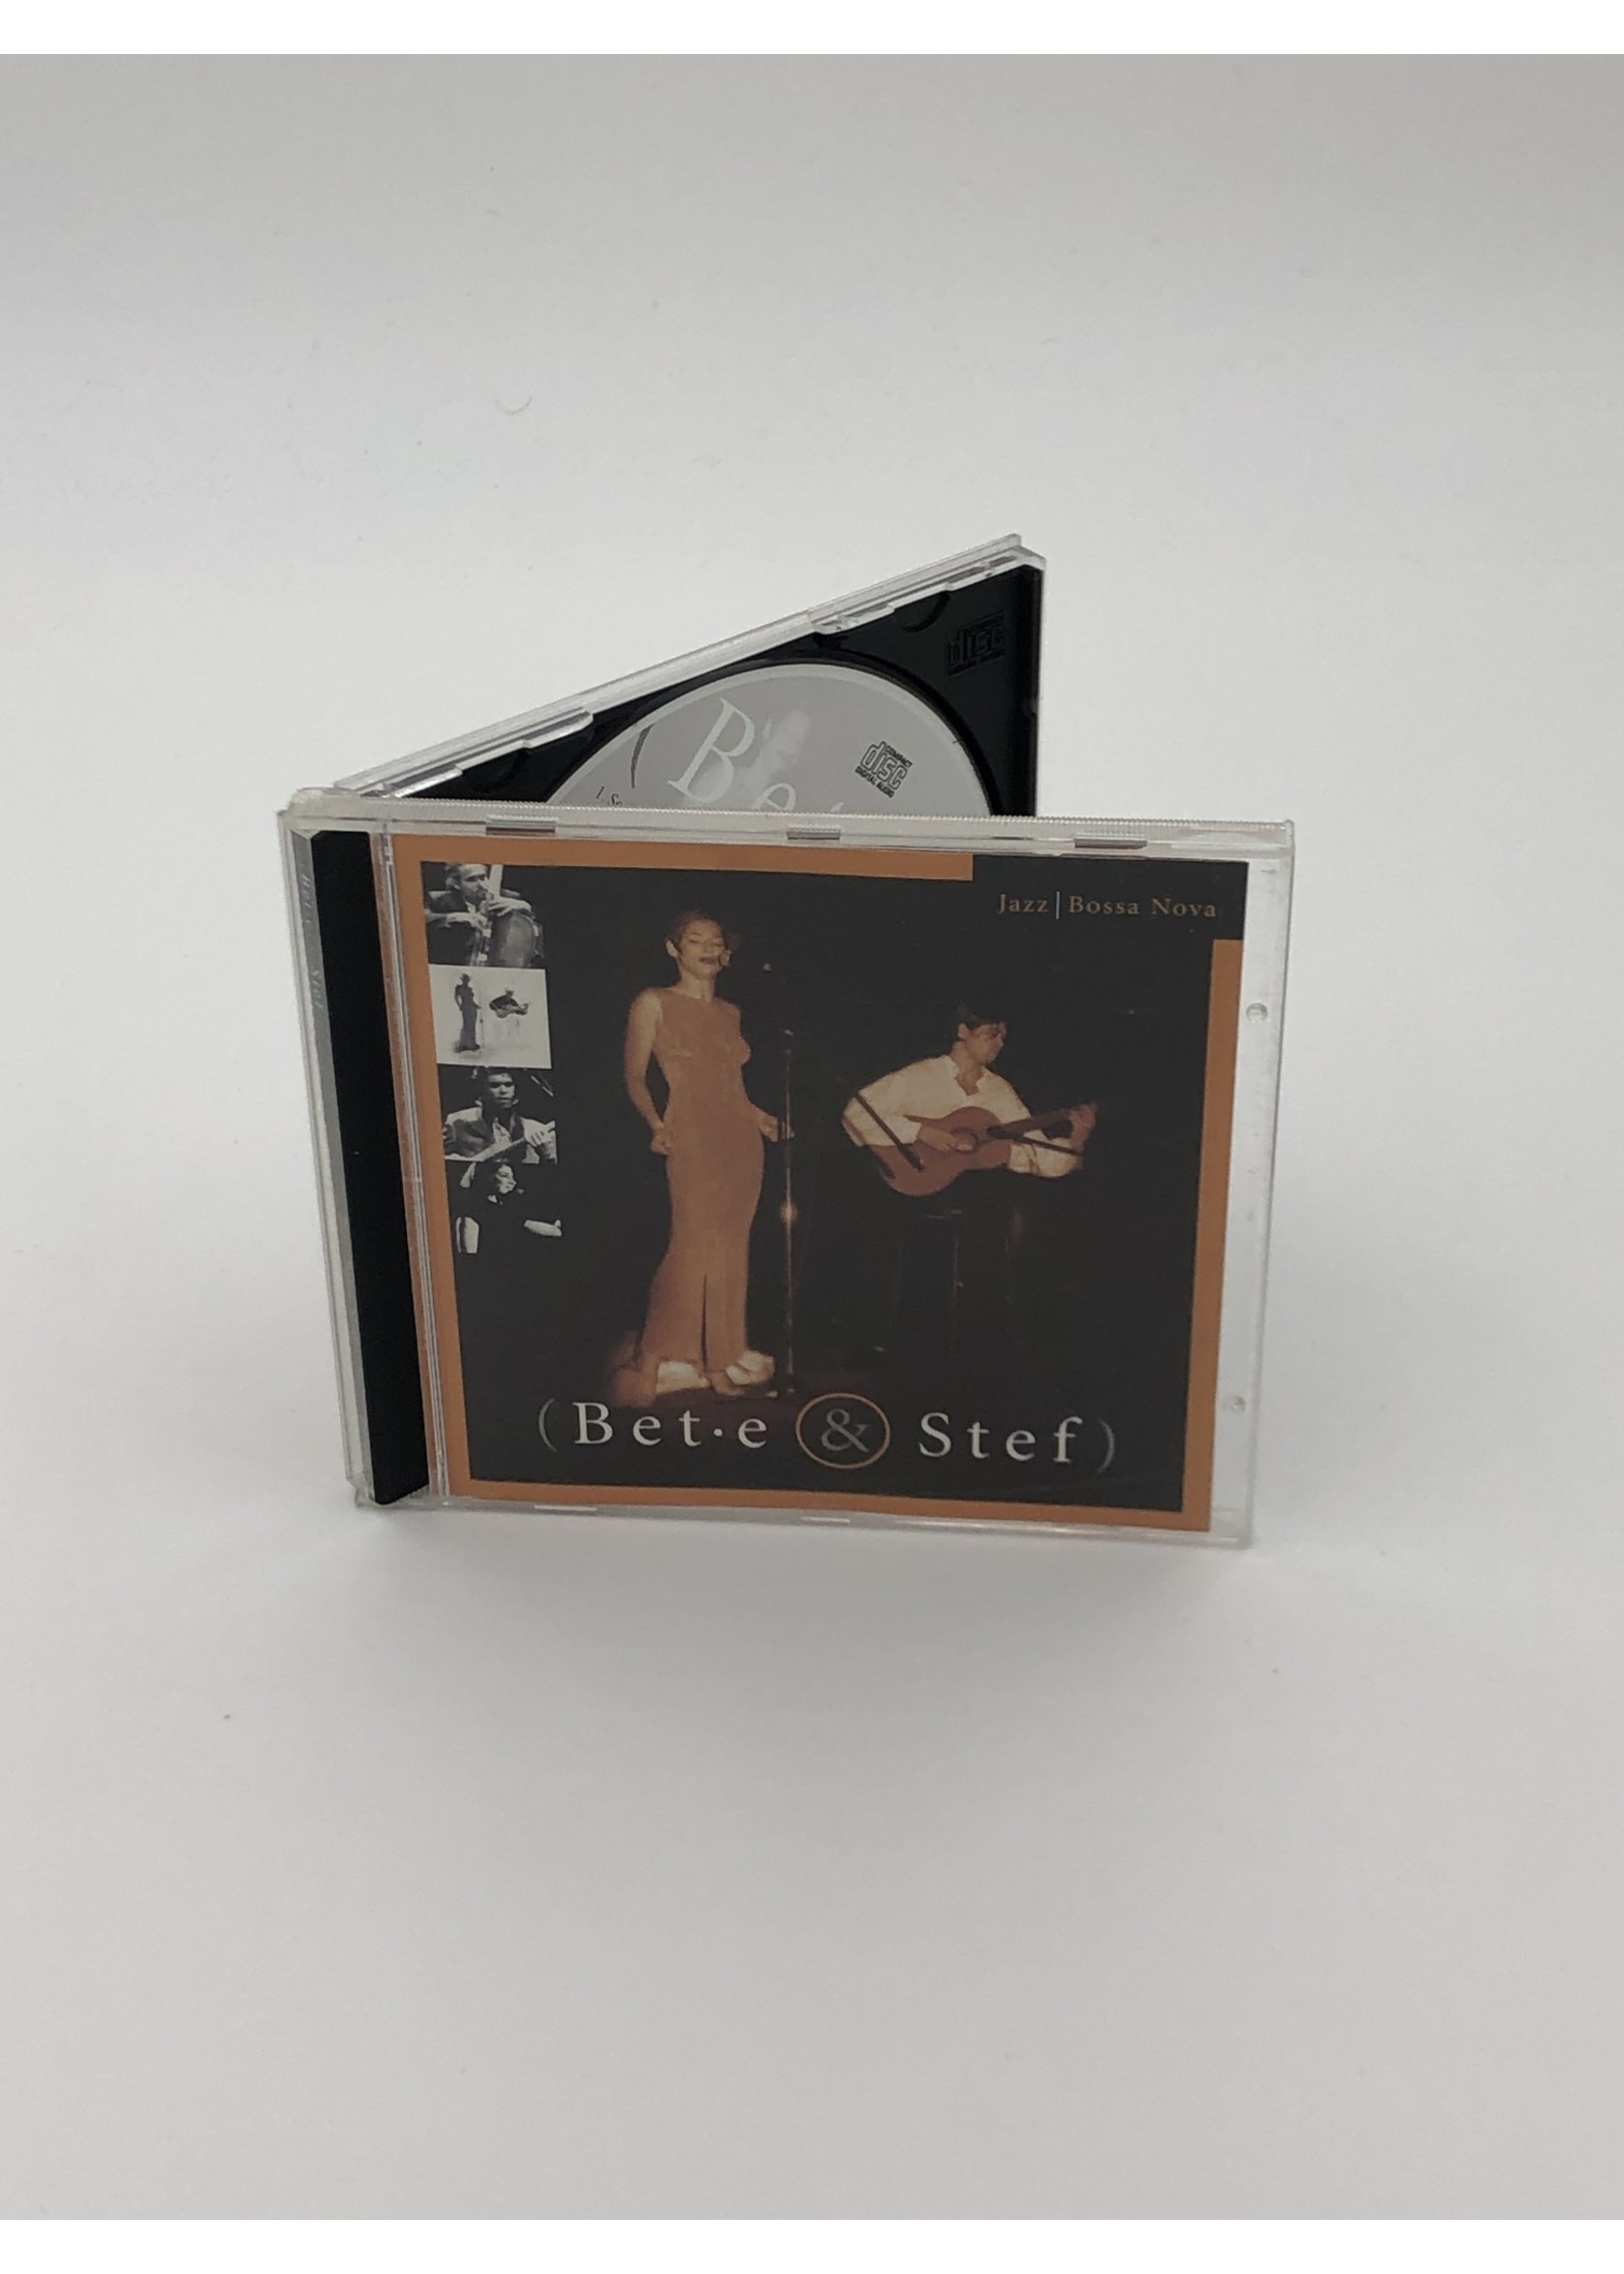 CD Bet E & Stef: Jazz: Bossa Nova CD